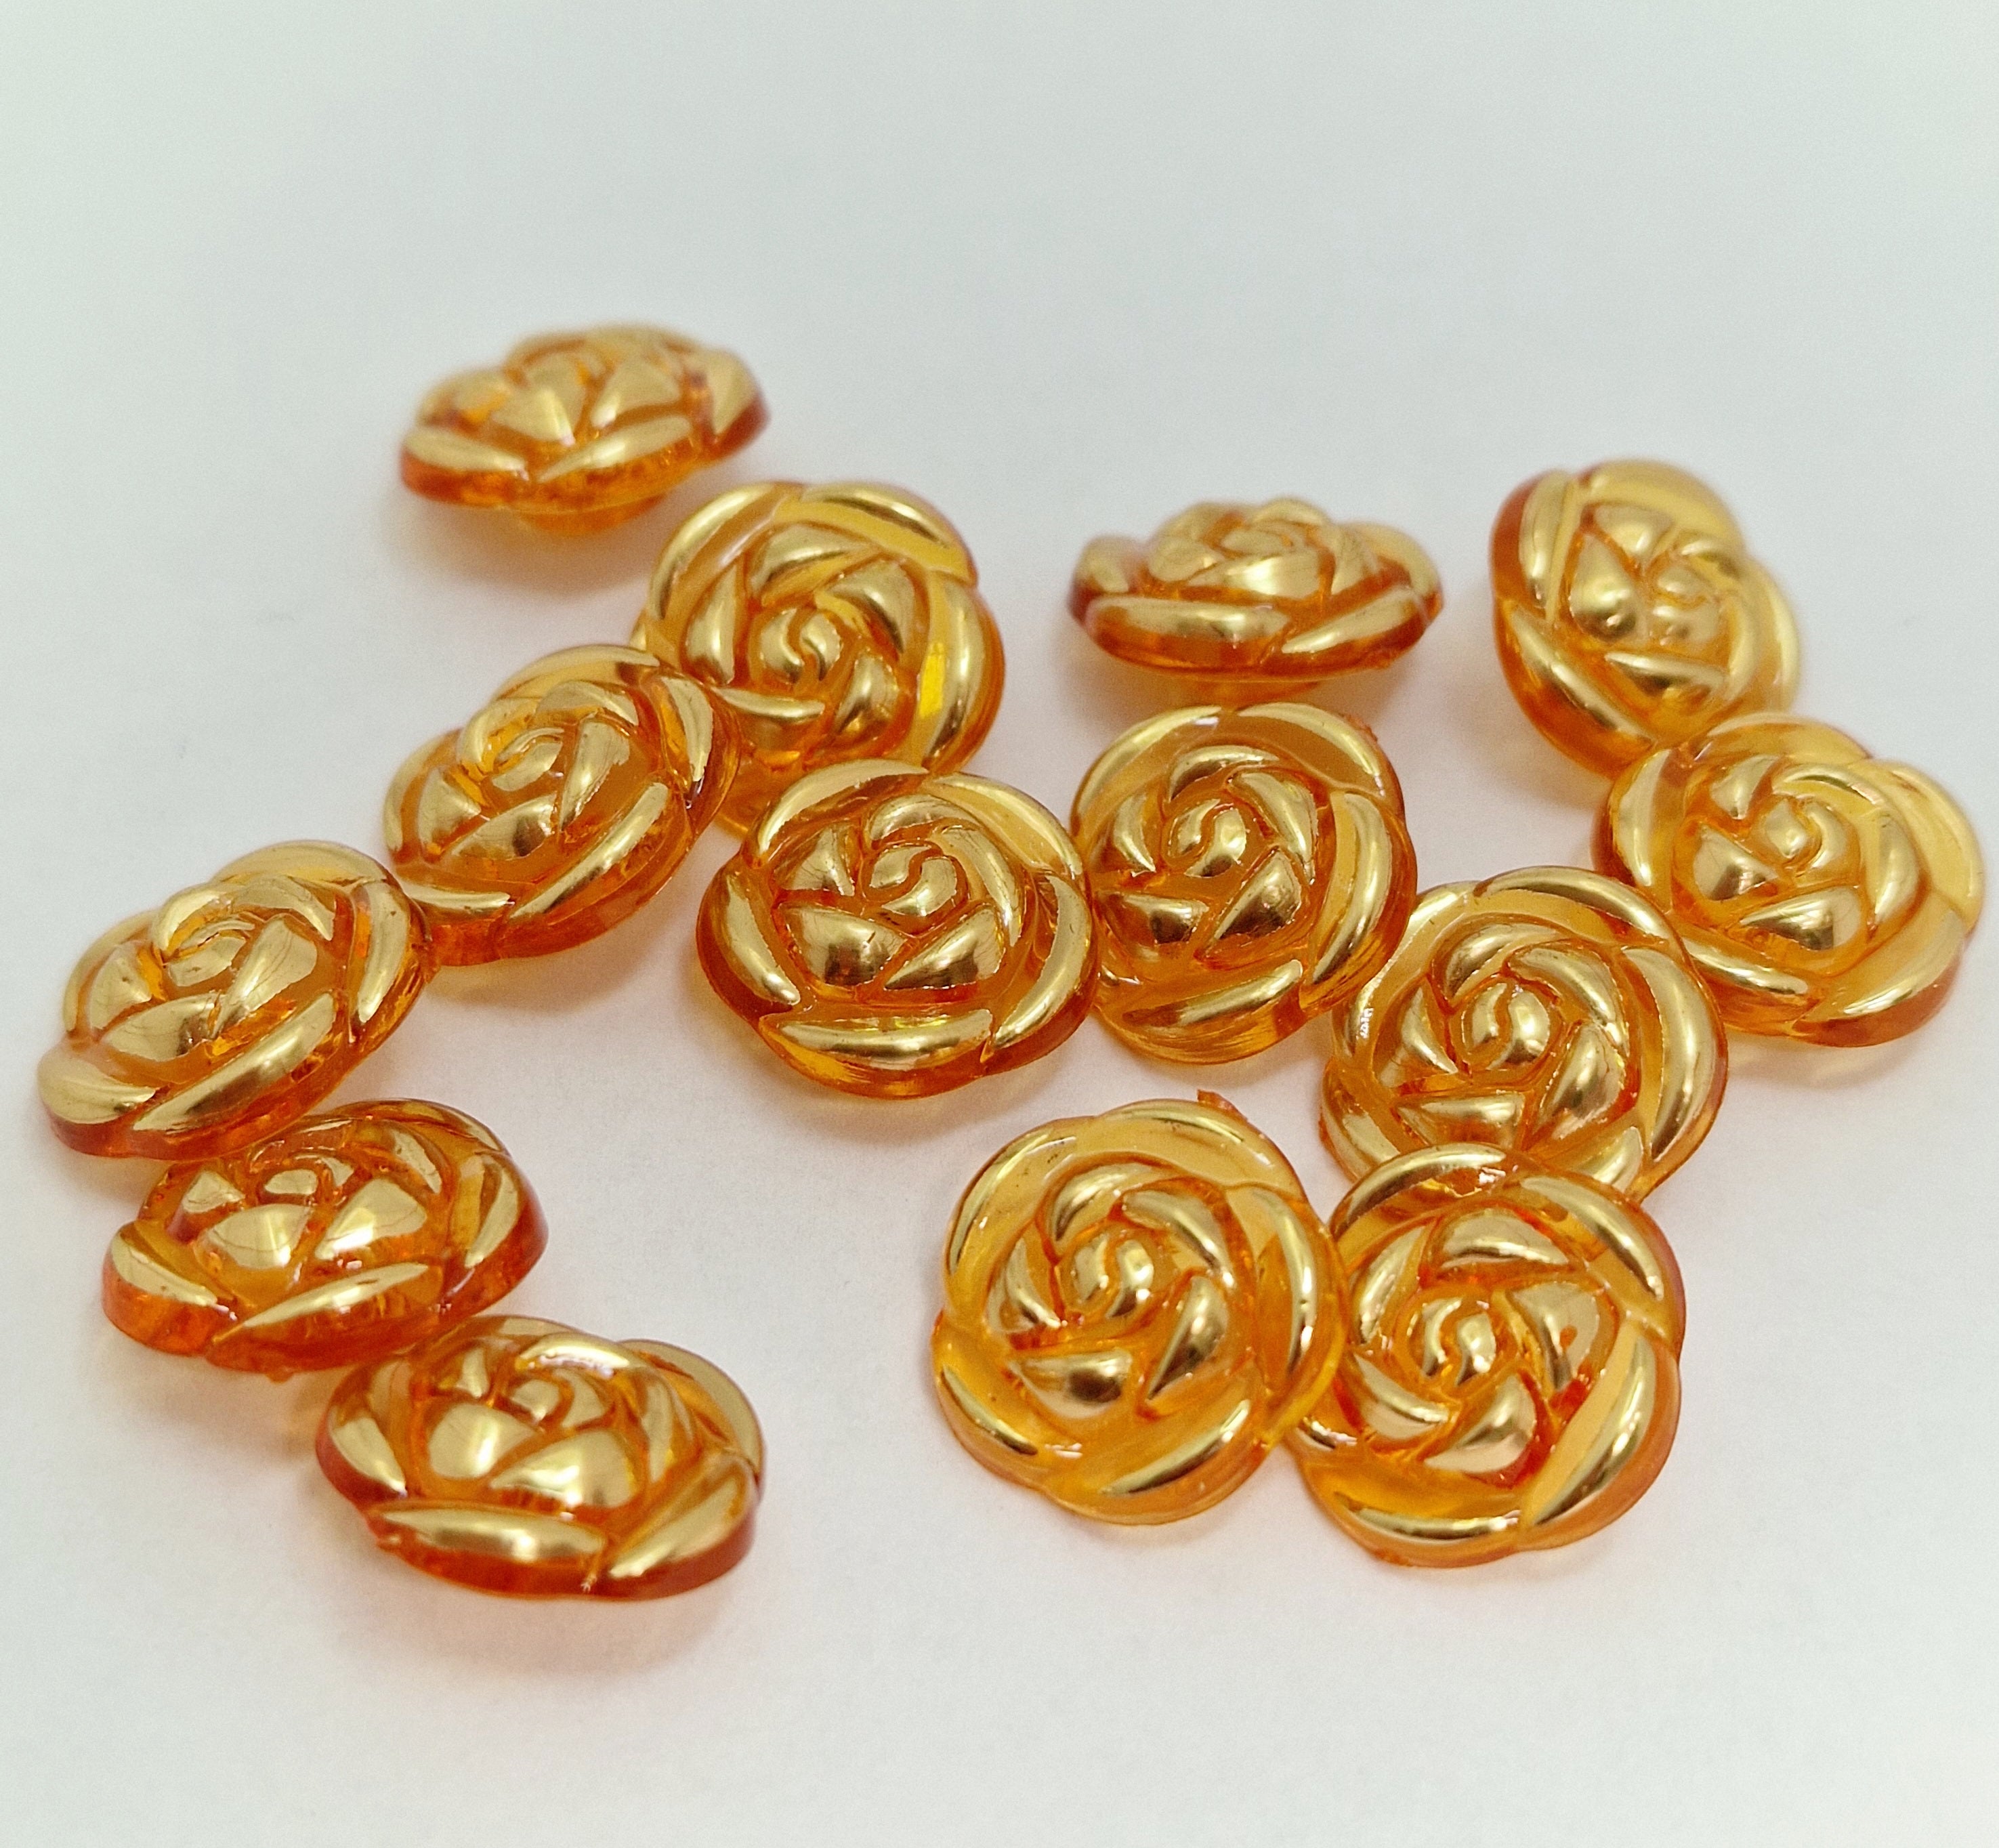 MajorCrafts 40pcs 13mm Orange & Gold Rose Flower Shank Resin Buttons